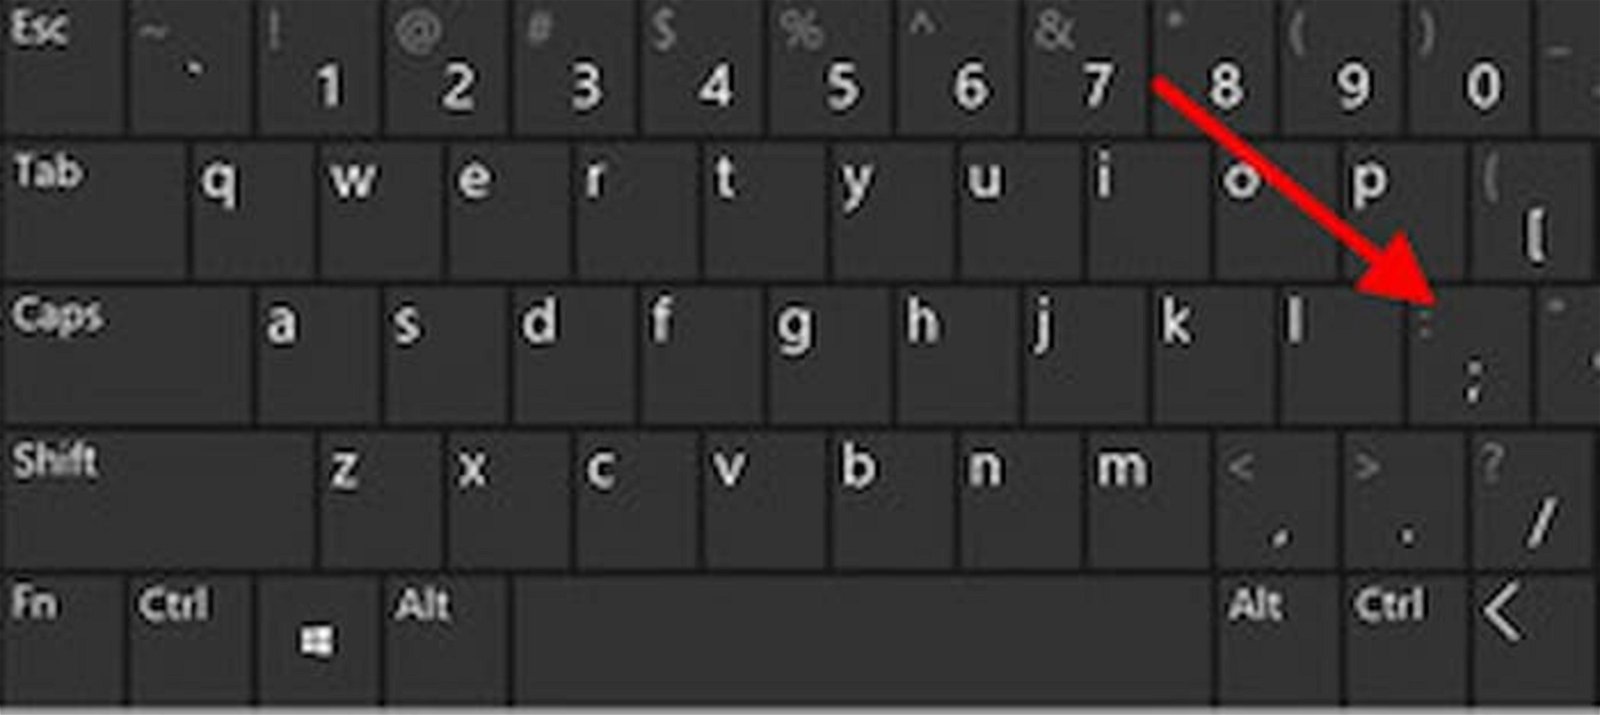 Aunque tengas un teclado con distribución QWERTY en inglés, existe una tecla equivalente para la Ñ